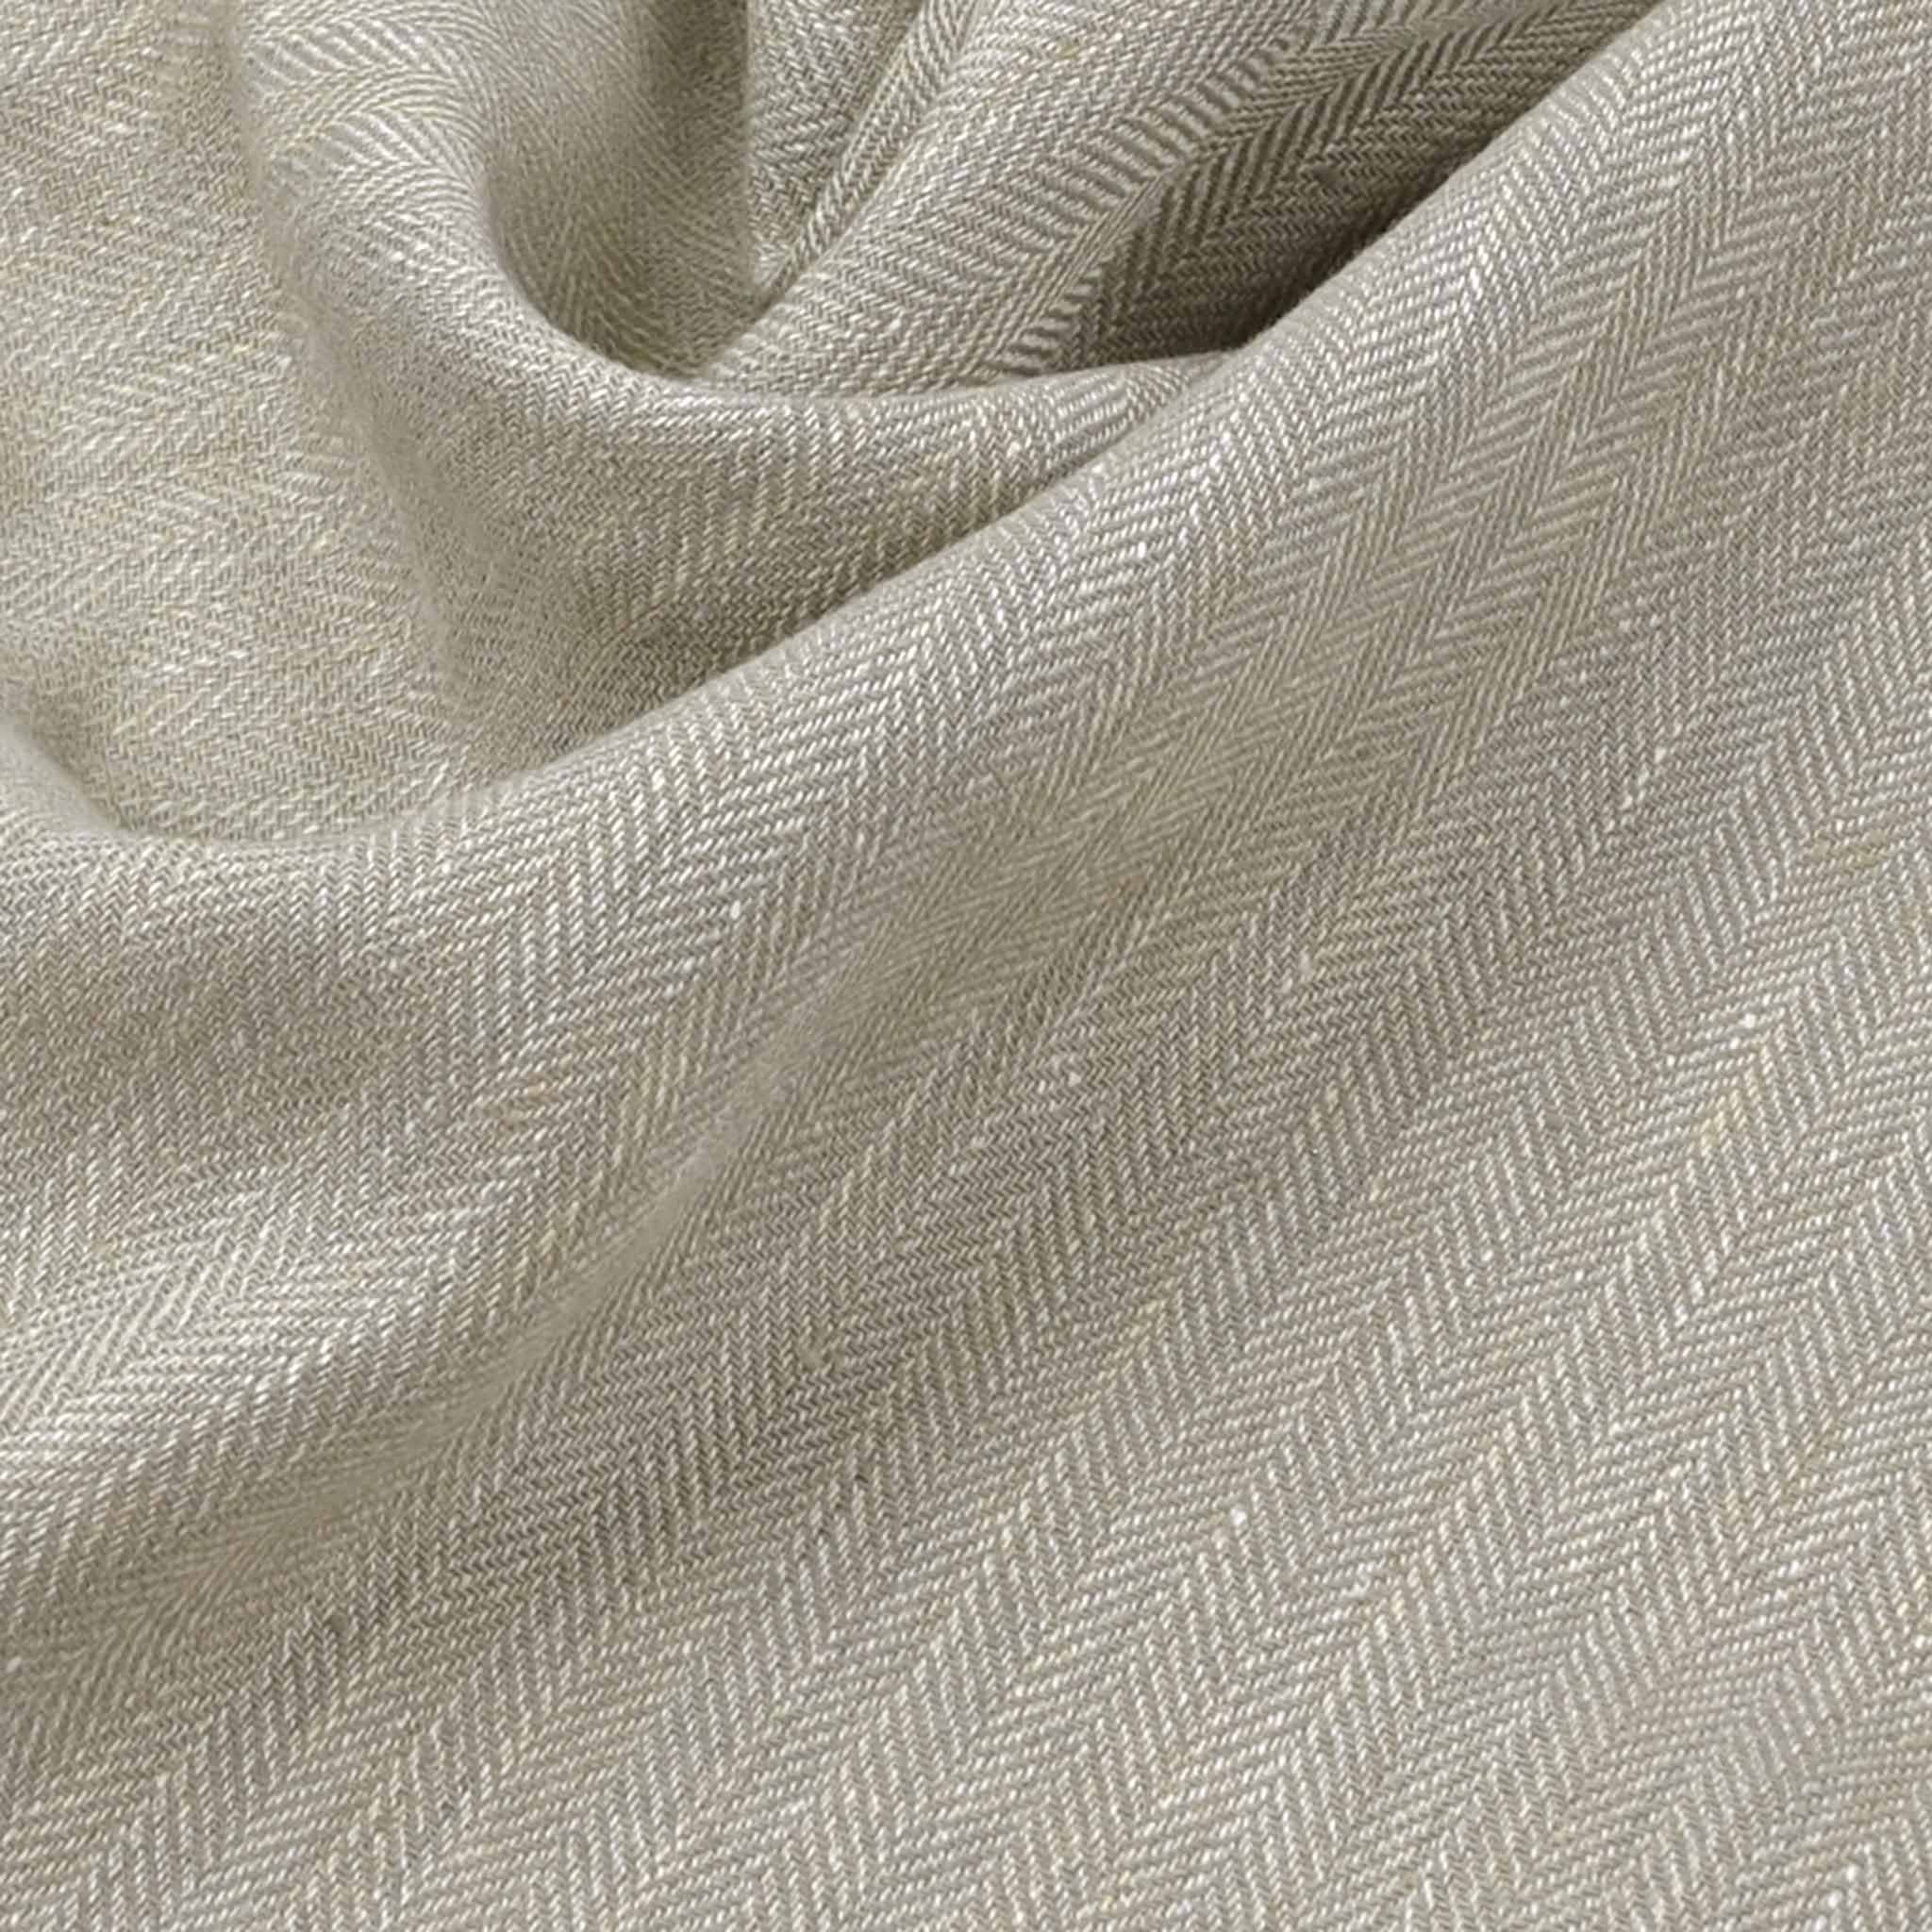 Taupe Herringbone Linen Fabric 99522